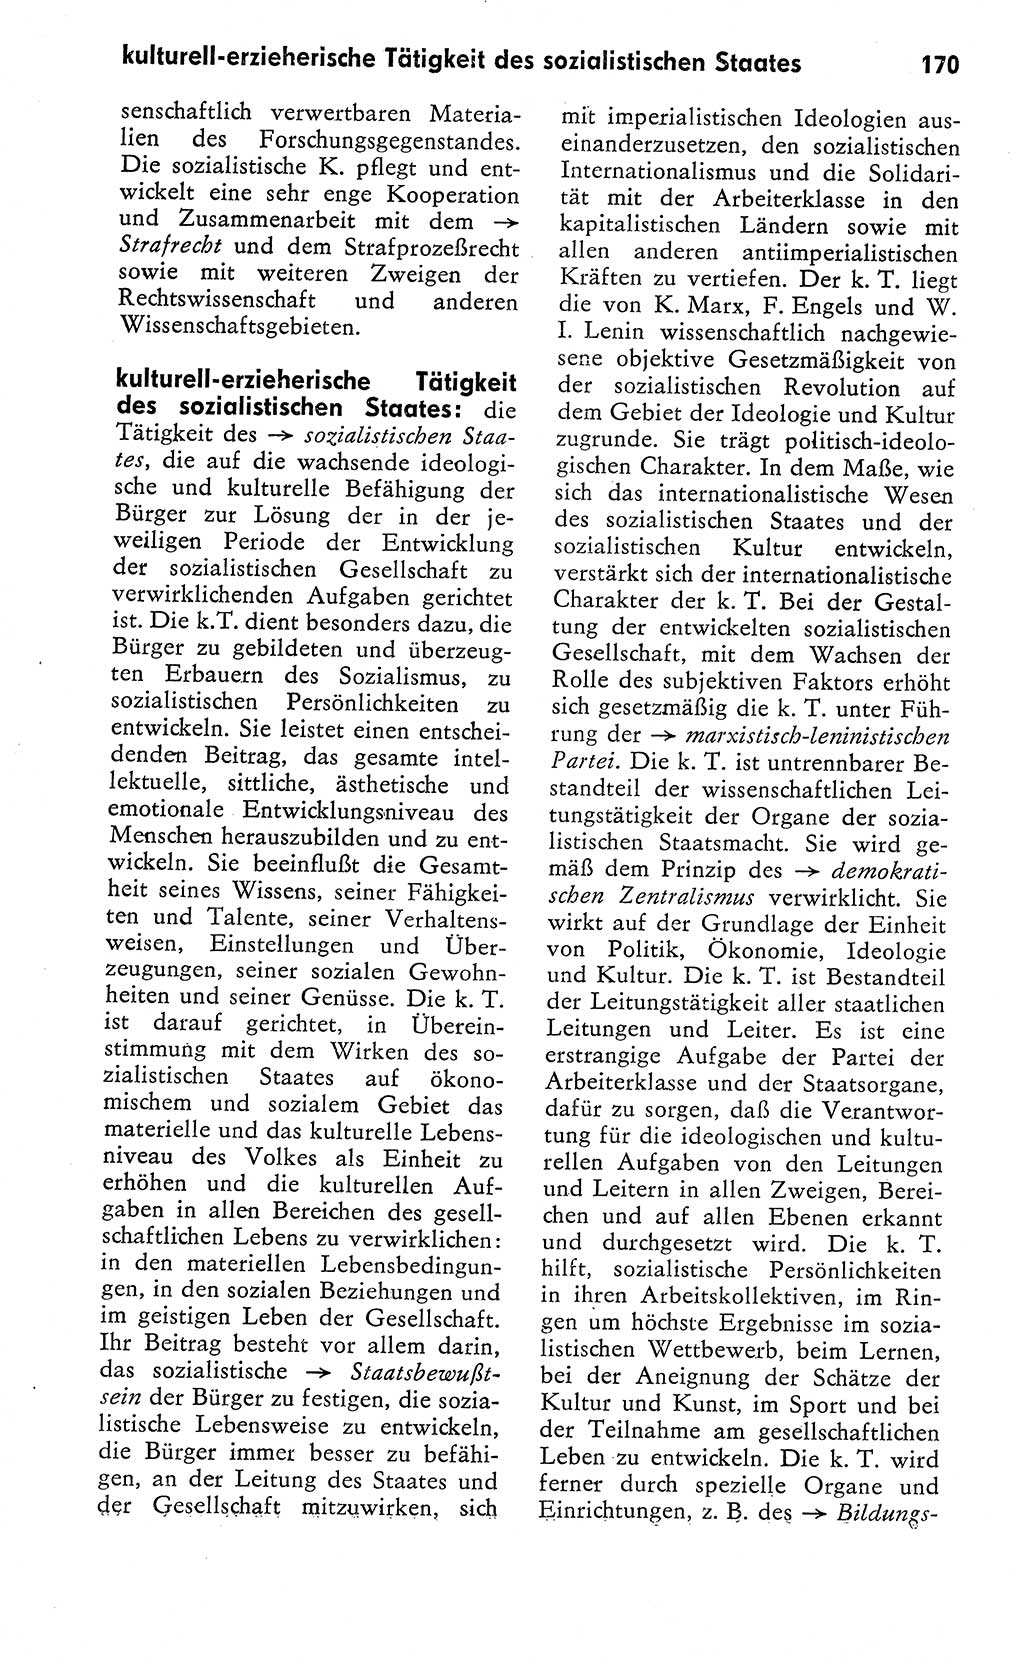 Wörterbuch zum sozialistischen Staat [Deutsche Demokratische Republik (DDR)] 1974, Seite 170 (Wb. soz. St. DDR 1974, S. 170)